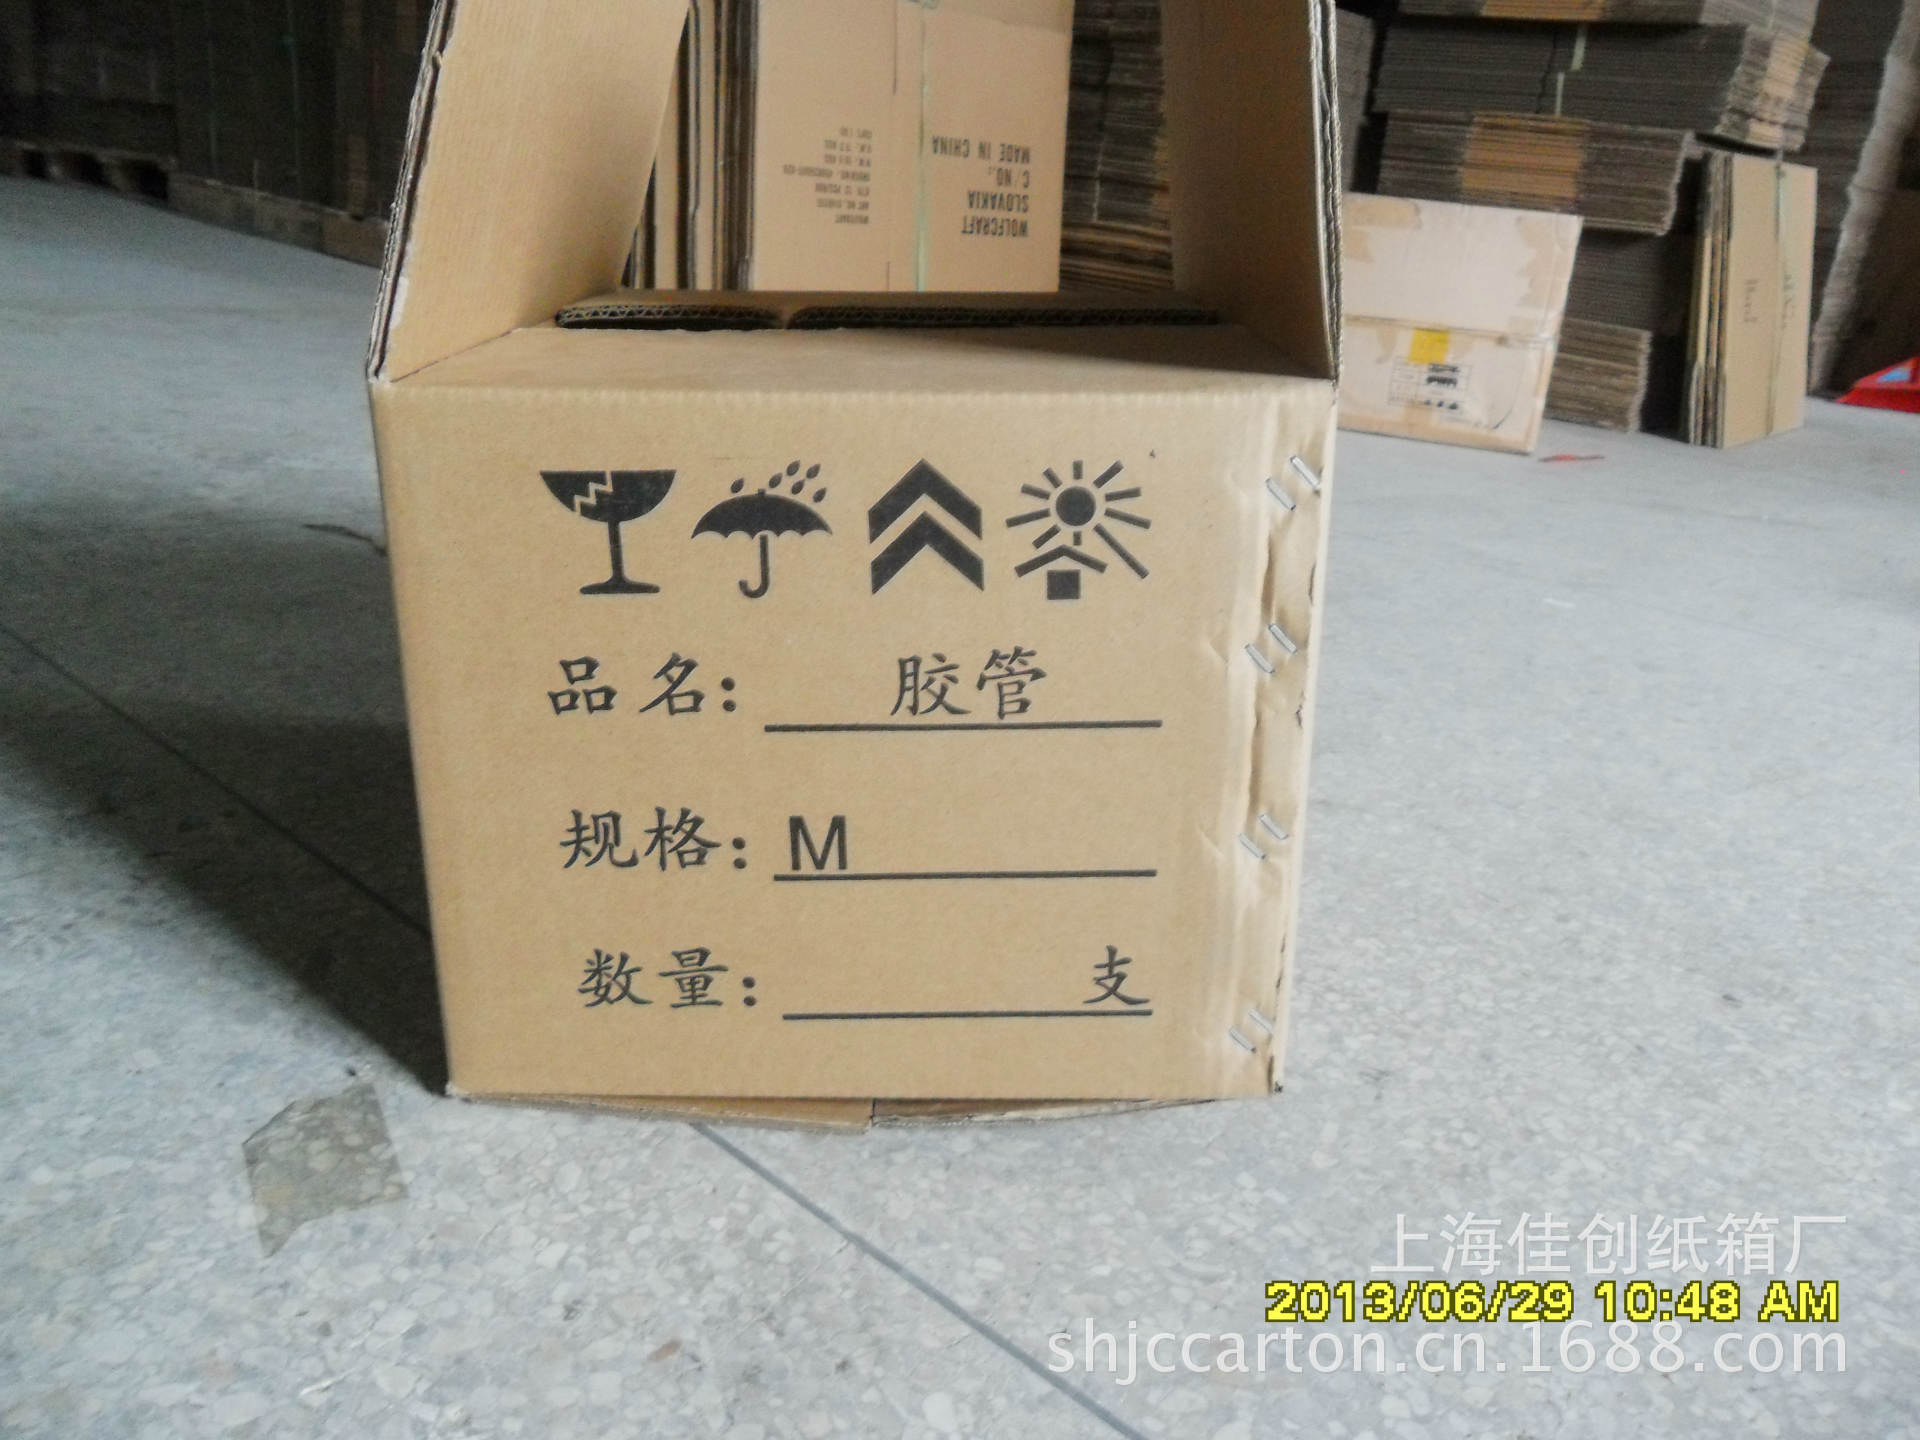 【供应打钉纸箱】价格,厂家,图片,纸箱,上海佳创纸箱厂